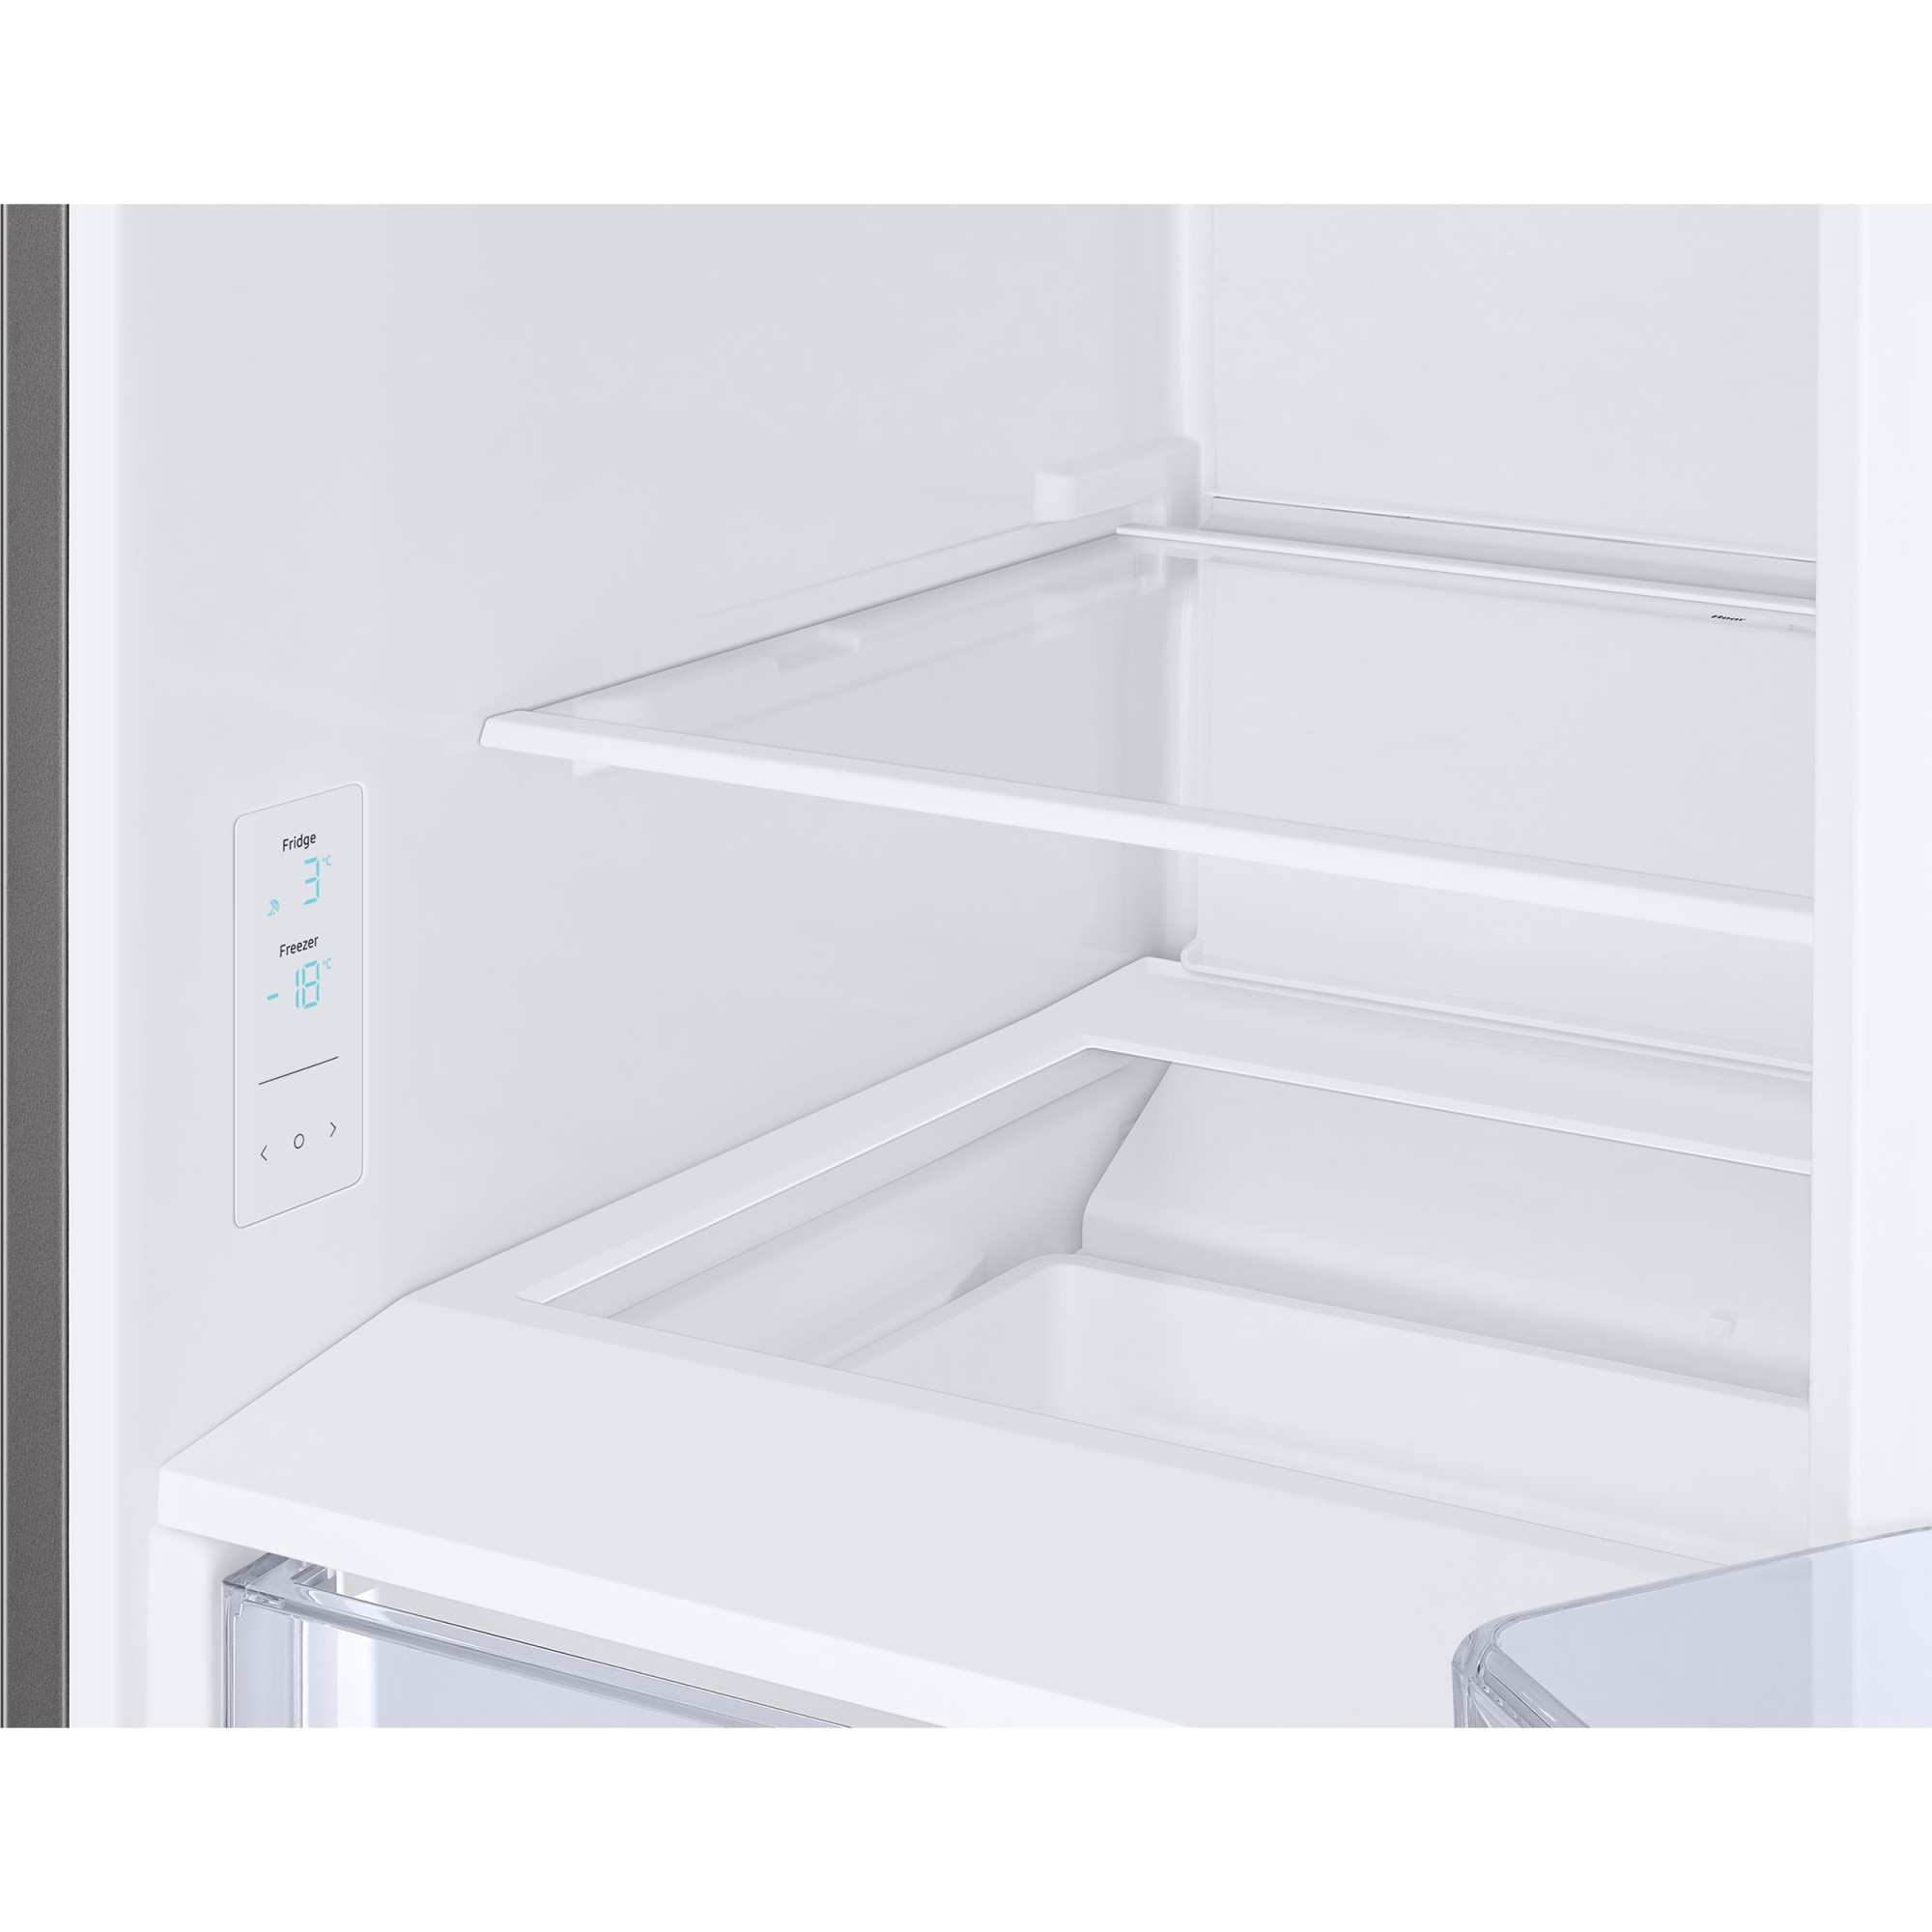 Refrigerateur congelateur en bas SAMSUNG RB34T600ESA Vo…